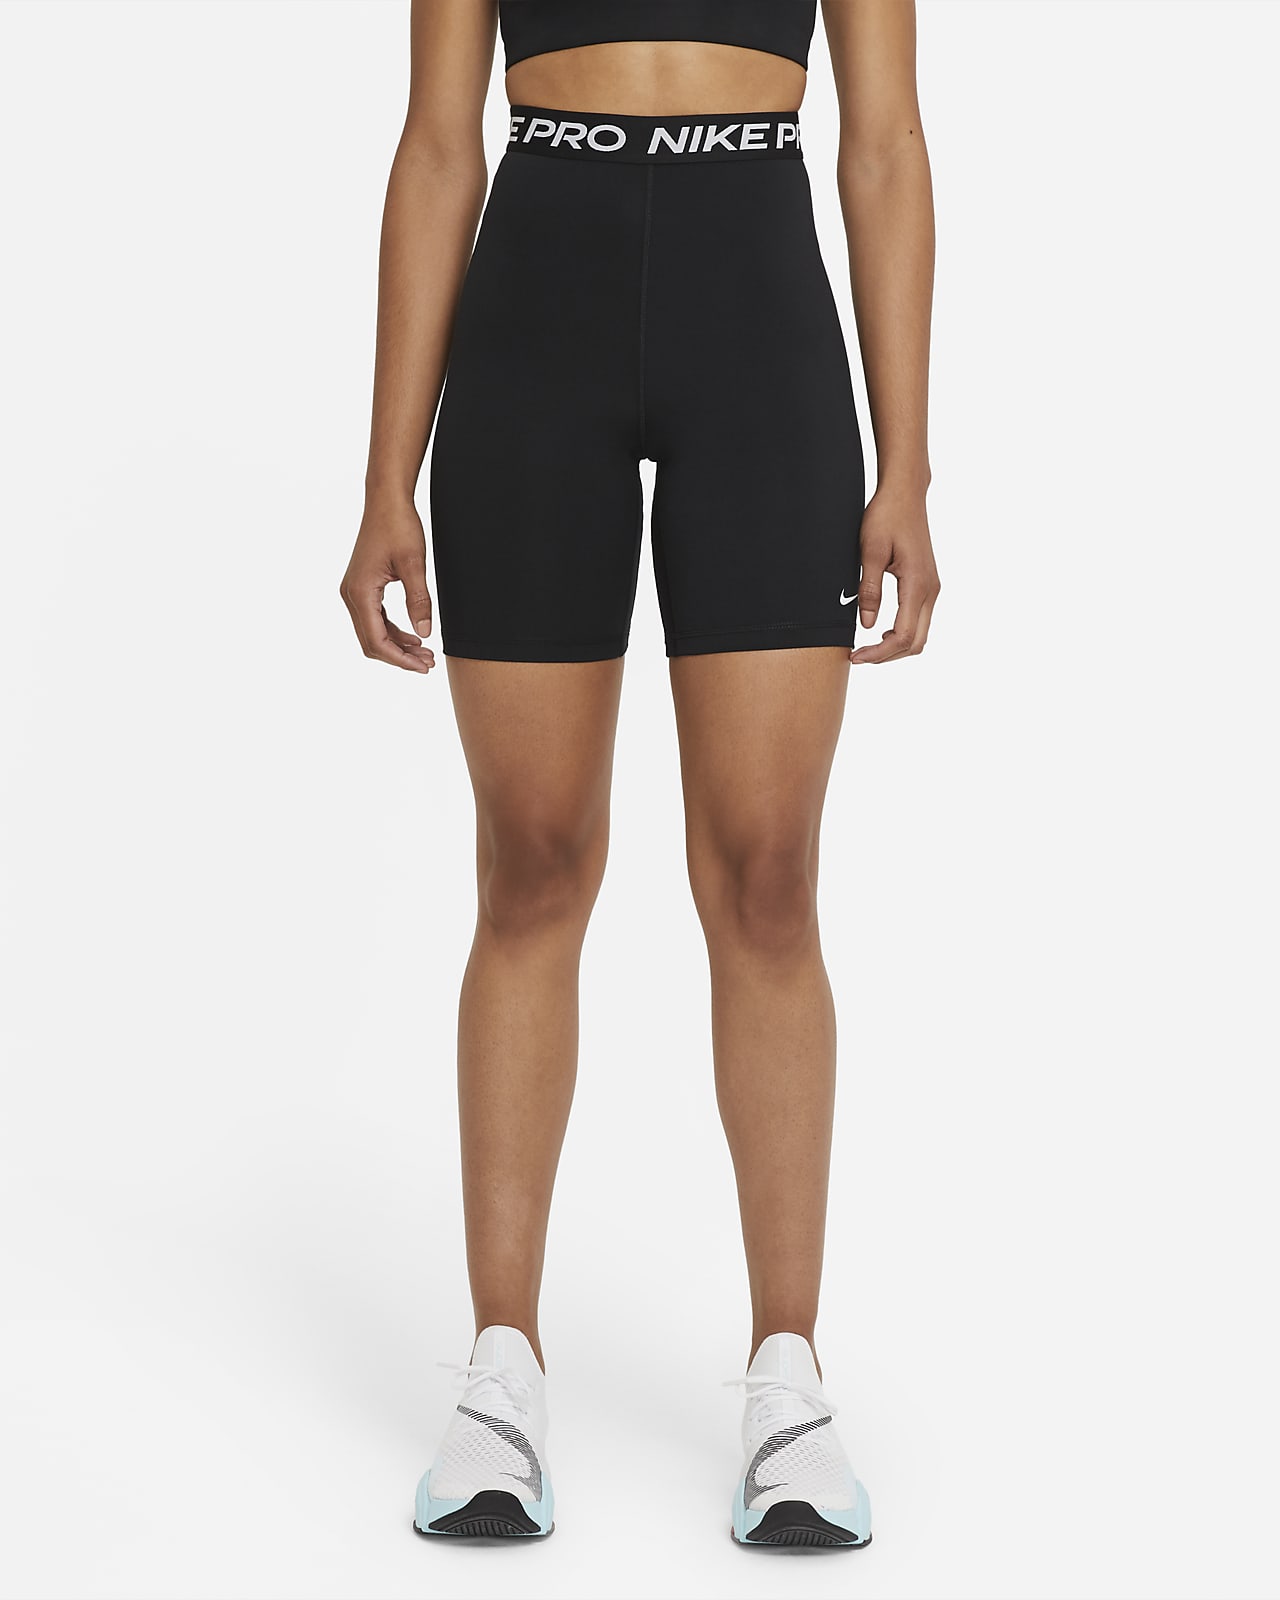 Damen Leggings Nike Pro 365 - schwarz/rosa